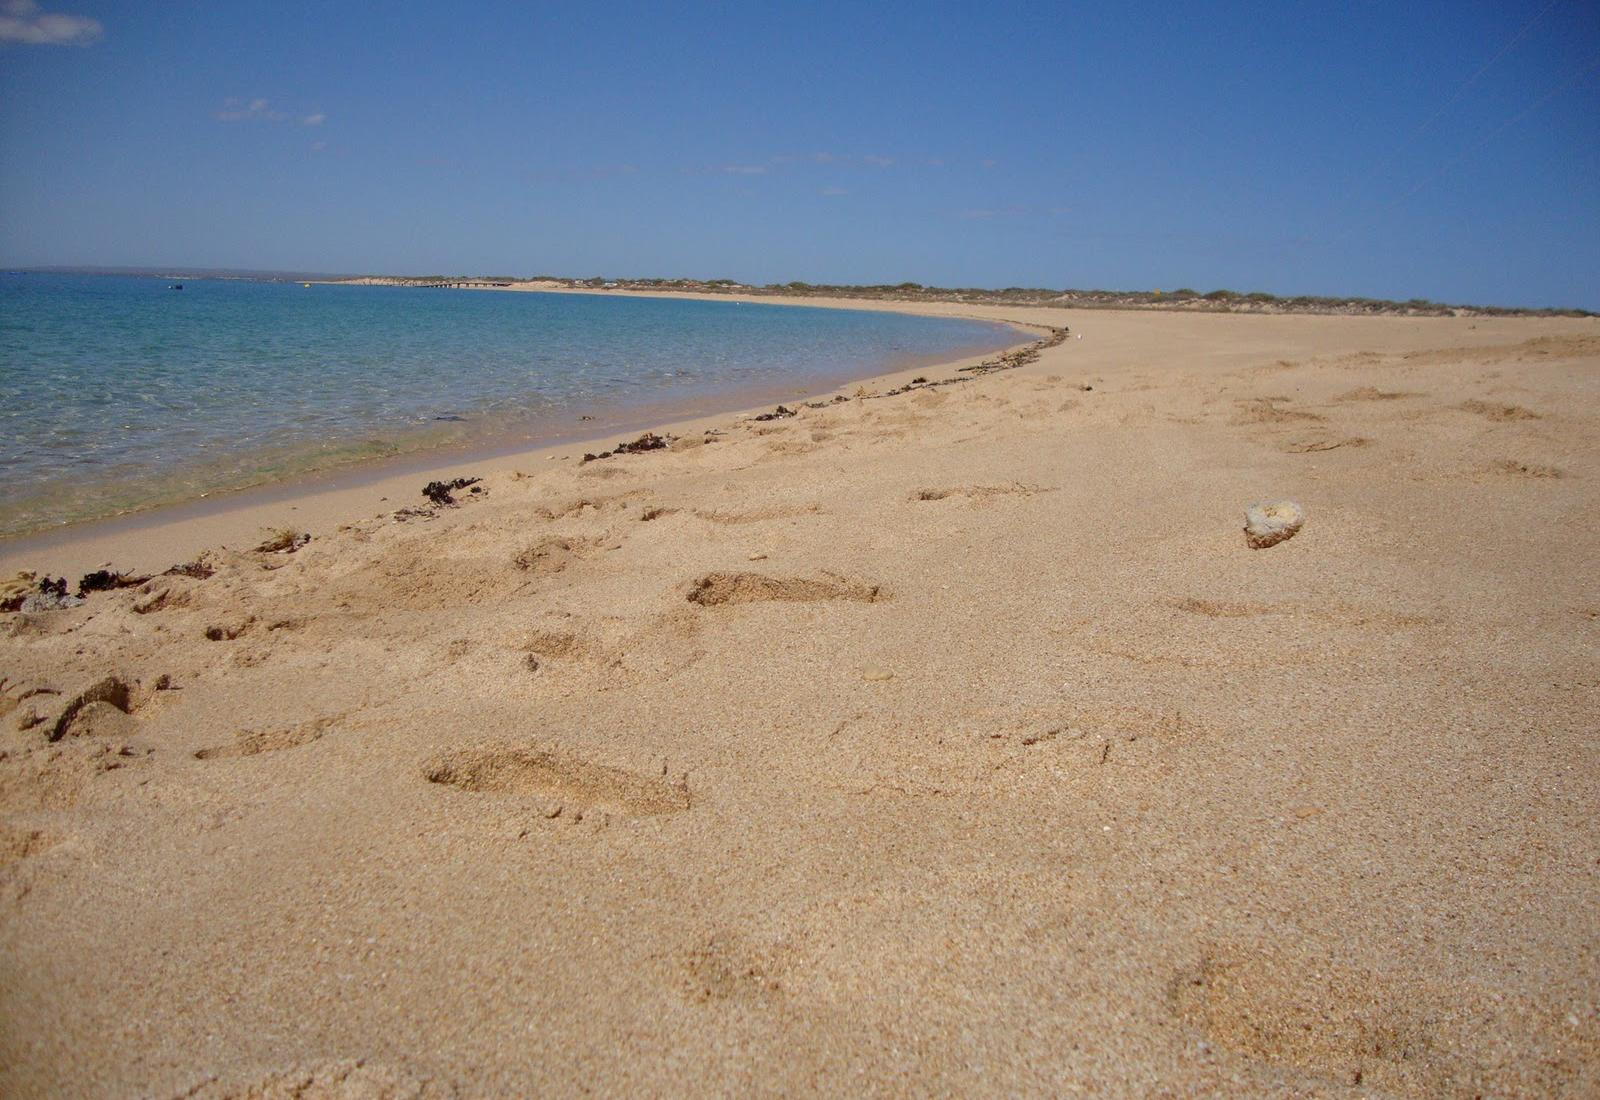 Sandee - Bundegi Beach